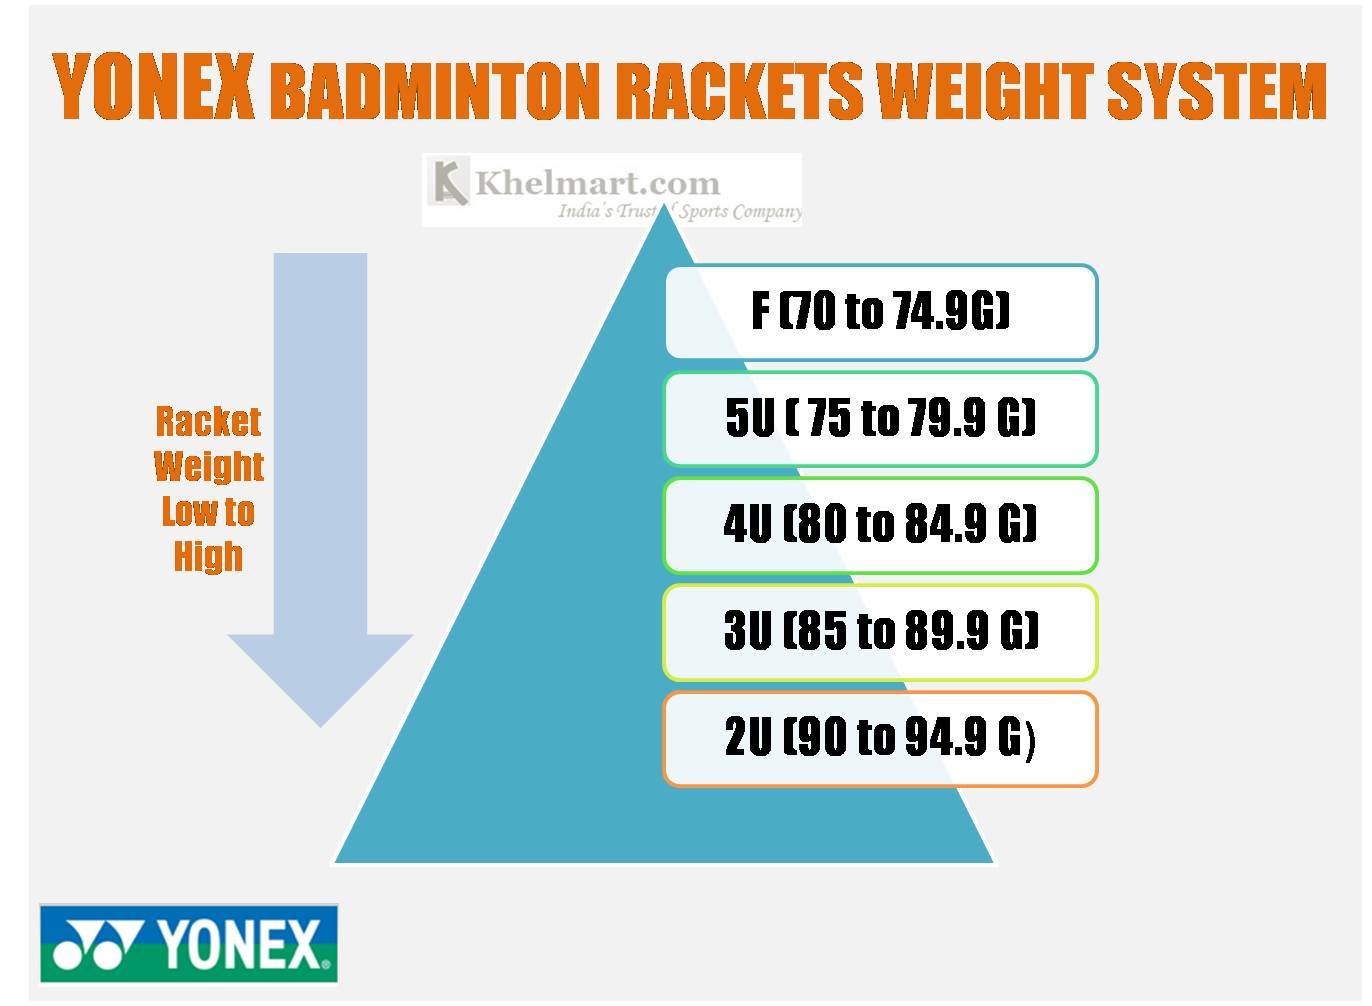  Yonex_Badminton_racket_Weight_Standard_Khelmart 